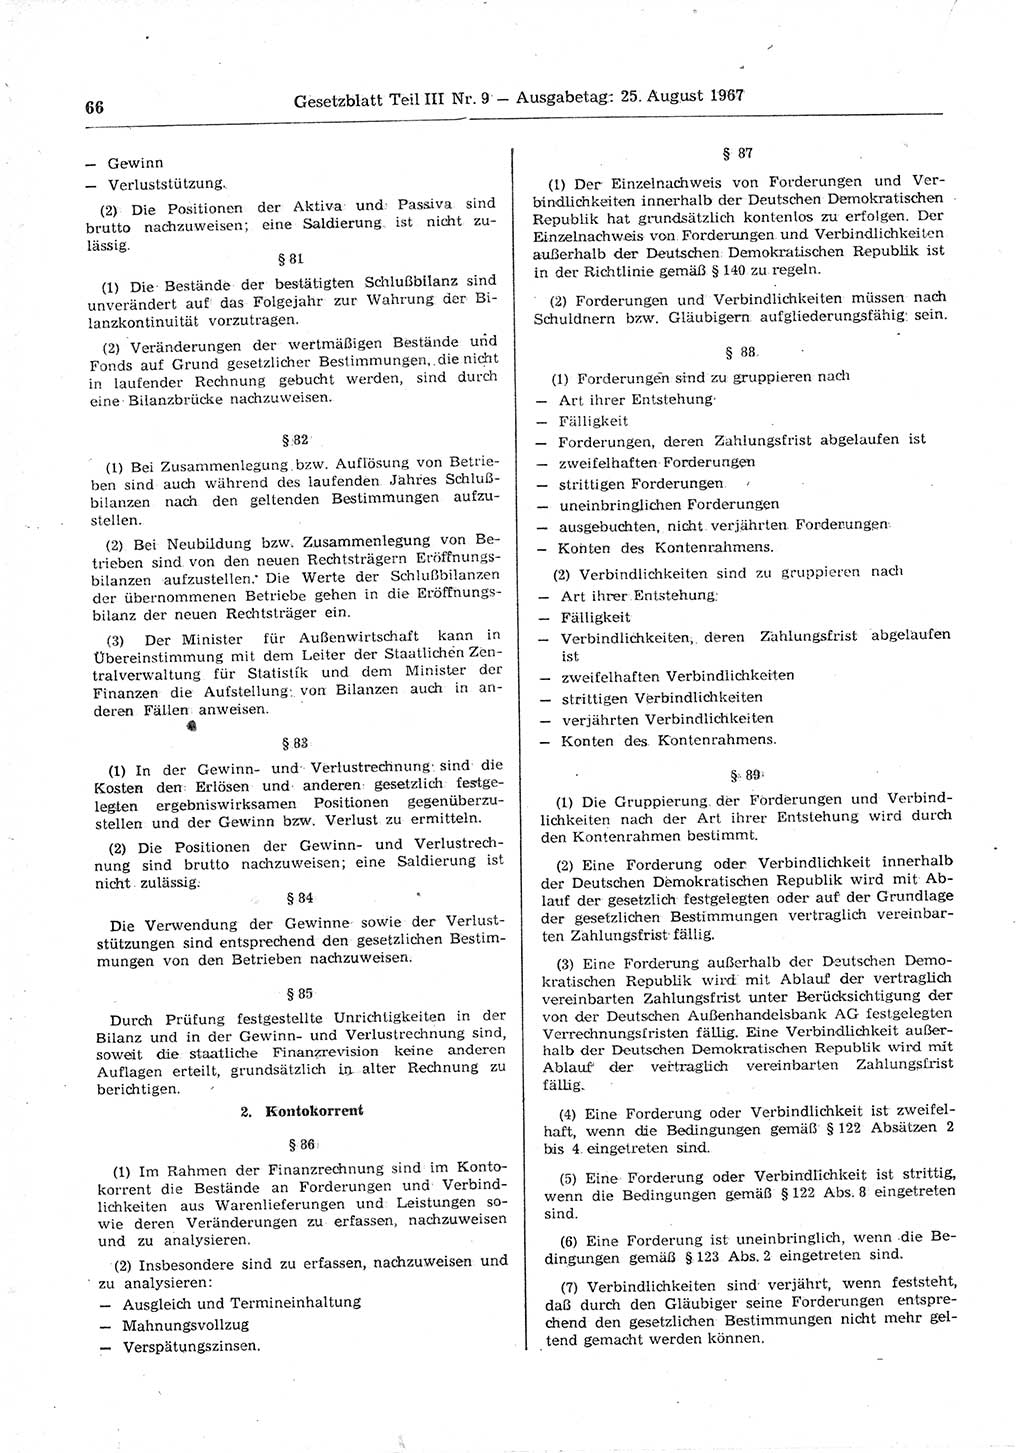 Gesetzblatt (GBl.) der Deutschen Demokratischen Republik (DDR) Teil ⅠⅠⅠ 1967, Seite 66 (GBl. DDR ⅠⅠⅠ 1967, S. 66)